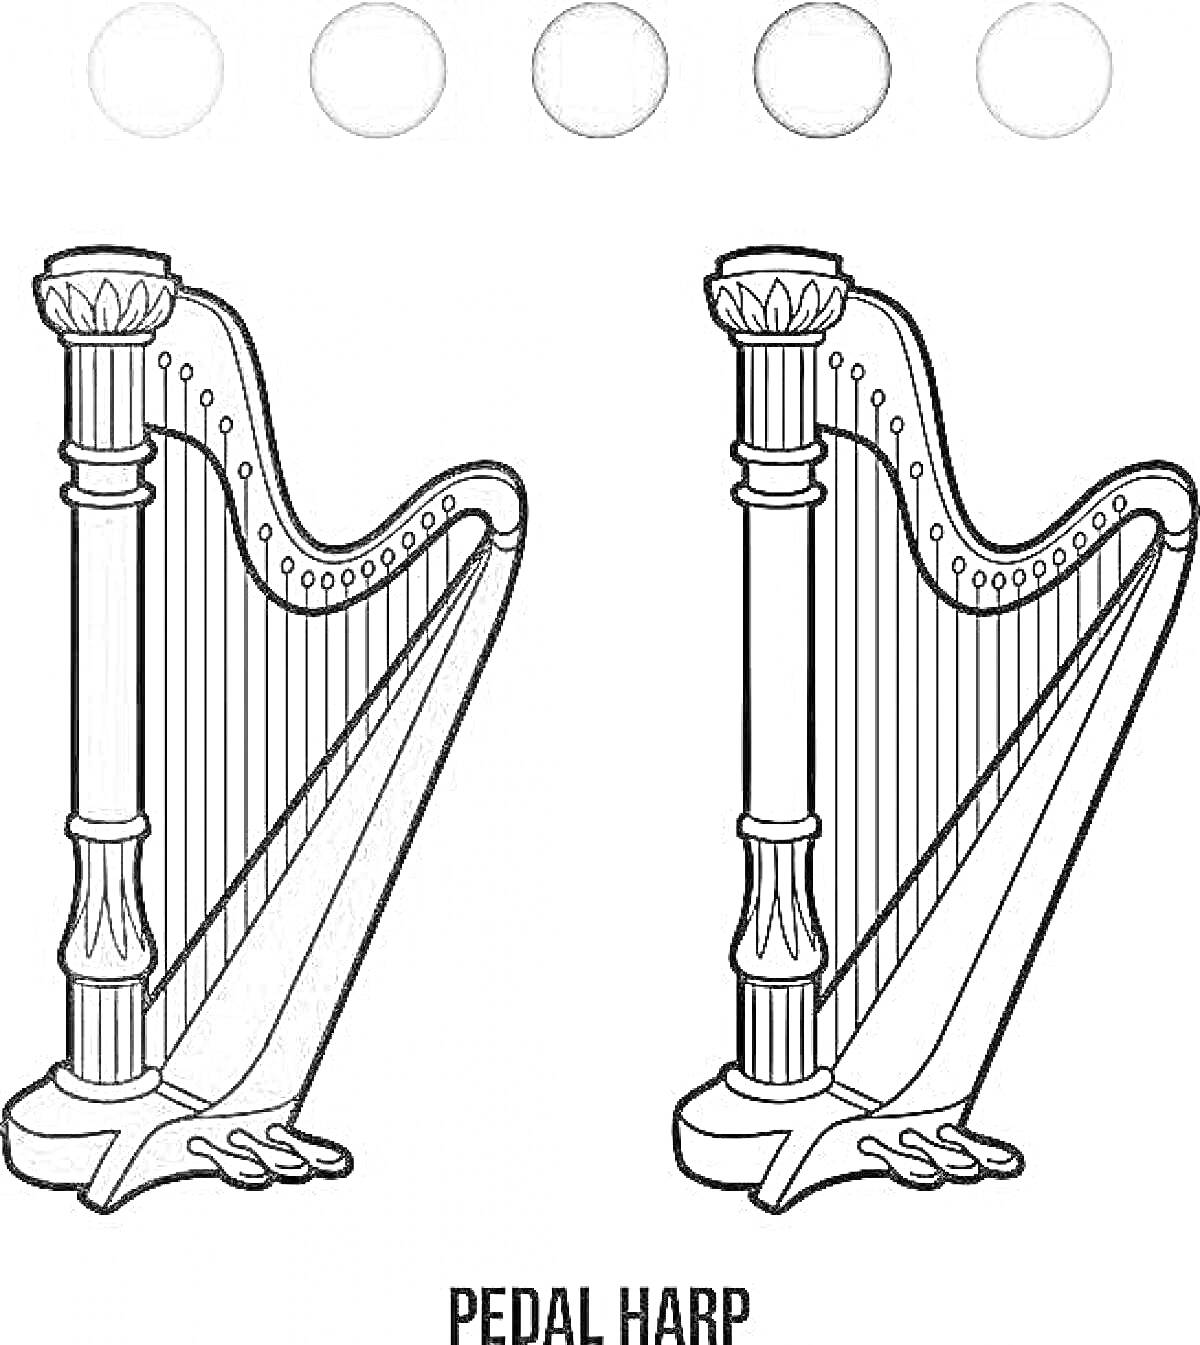 арфа с педалями, части арфы включают столб, резонаторную дека и струны, палитра серых тонов